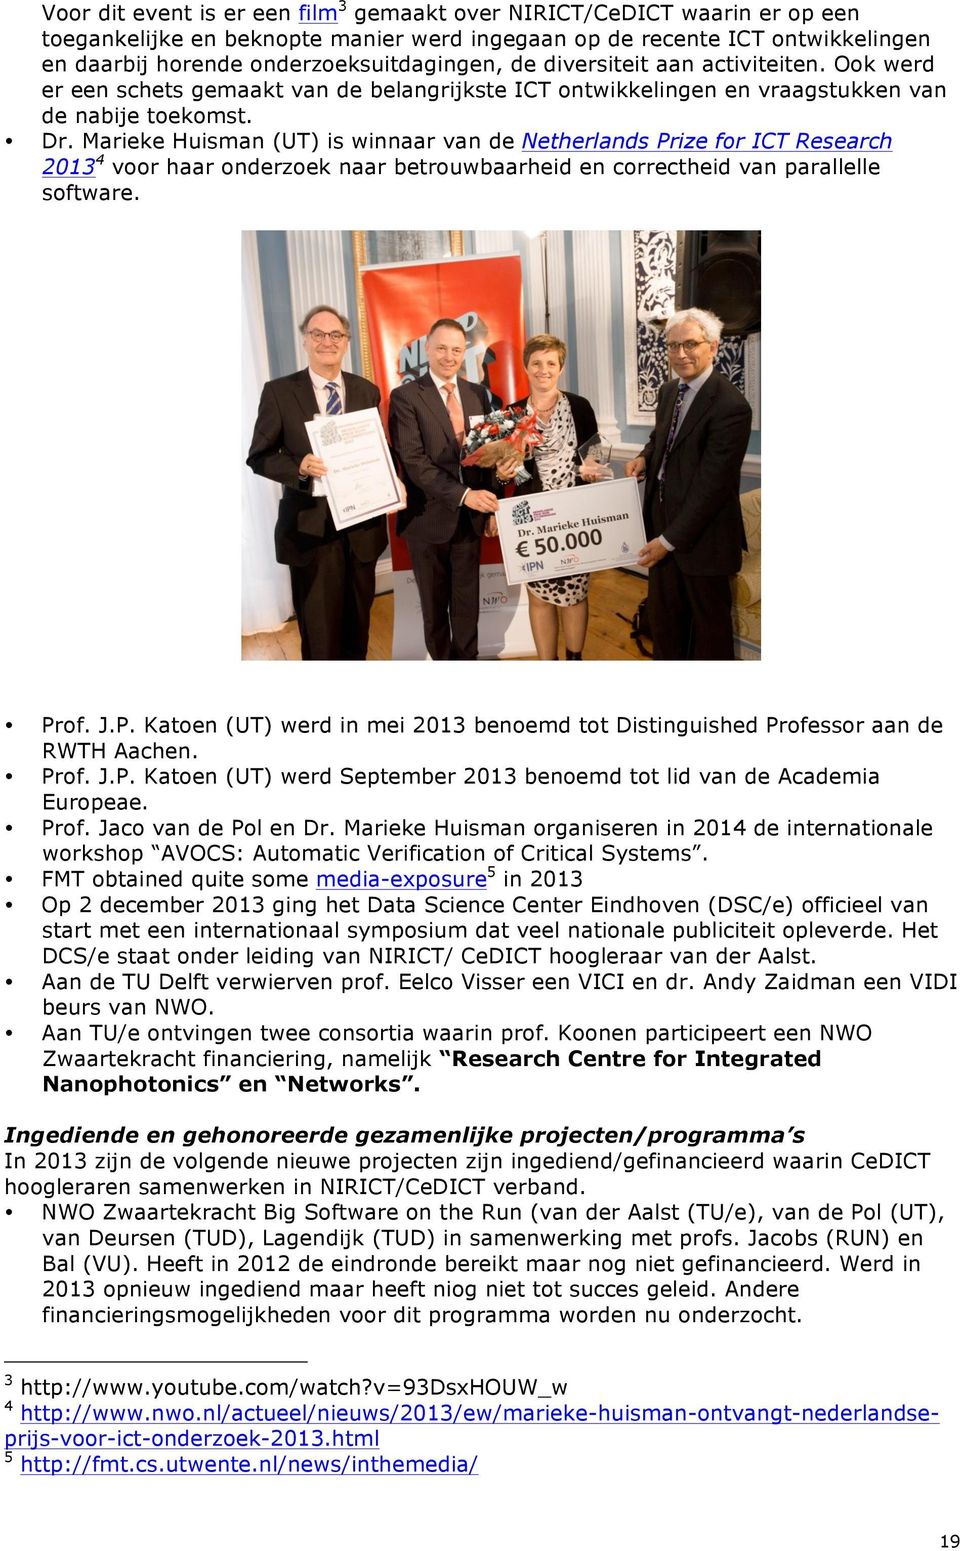 Marieke Huisman (UT) is winnaar van de Netherlands Prize for ICT Research 2013 4 voor haar onderzoek naar betrouwbaarheid en correctheid van parallelle software. Prof. J.P. Katoen (UT) werd in mei 2013 benoemd tot Distinguished Professor aan de RWTH Aachen.